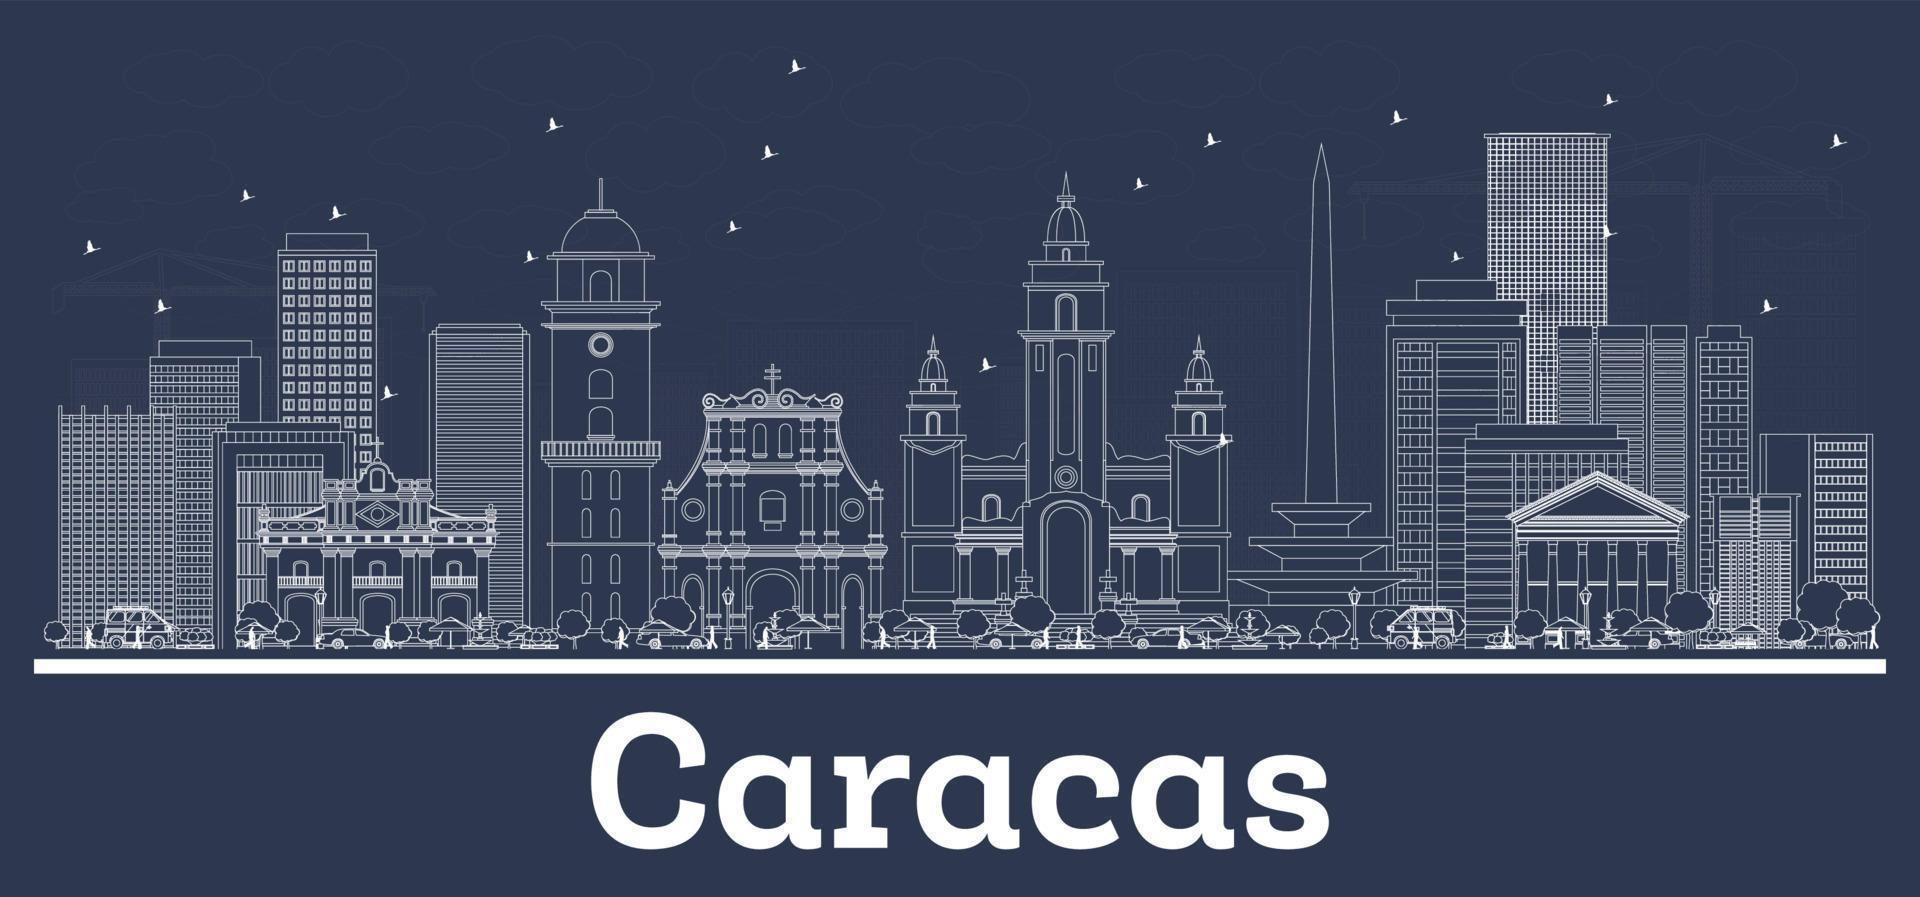 décrire les toits de la ville de caracas venezuela avec des bâtiments blancs. vecteur